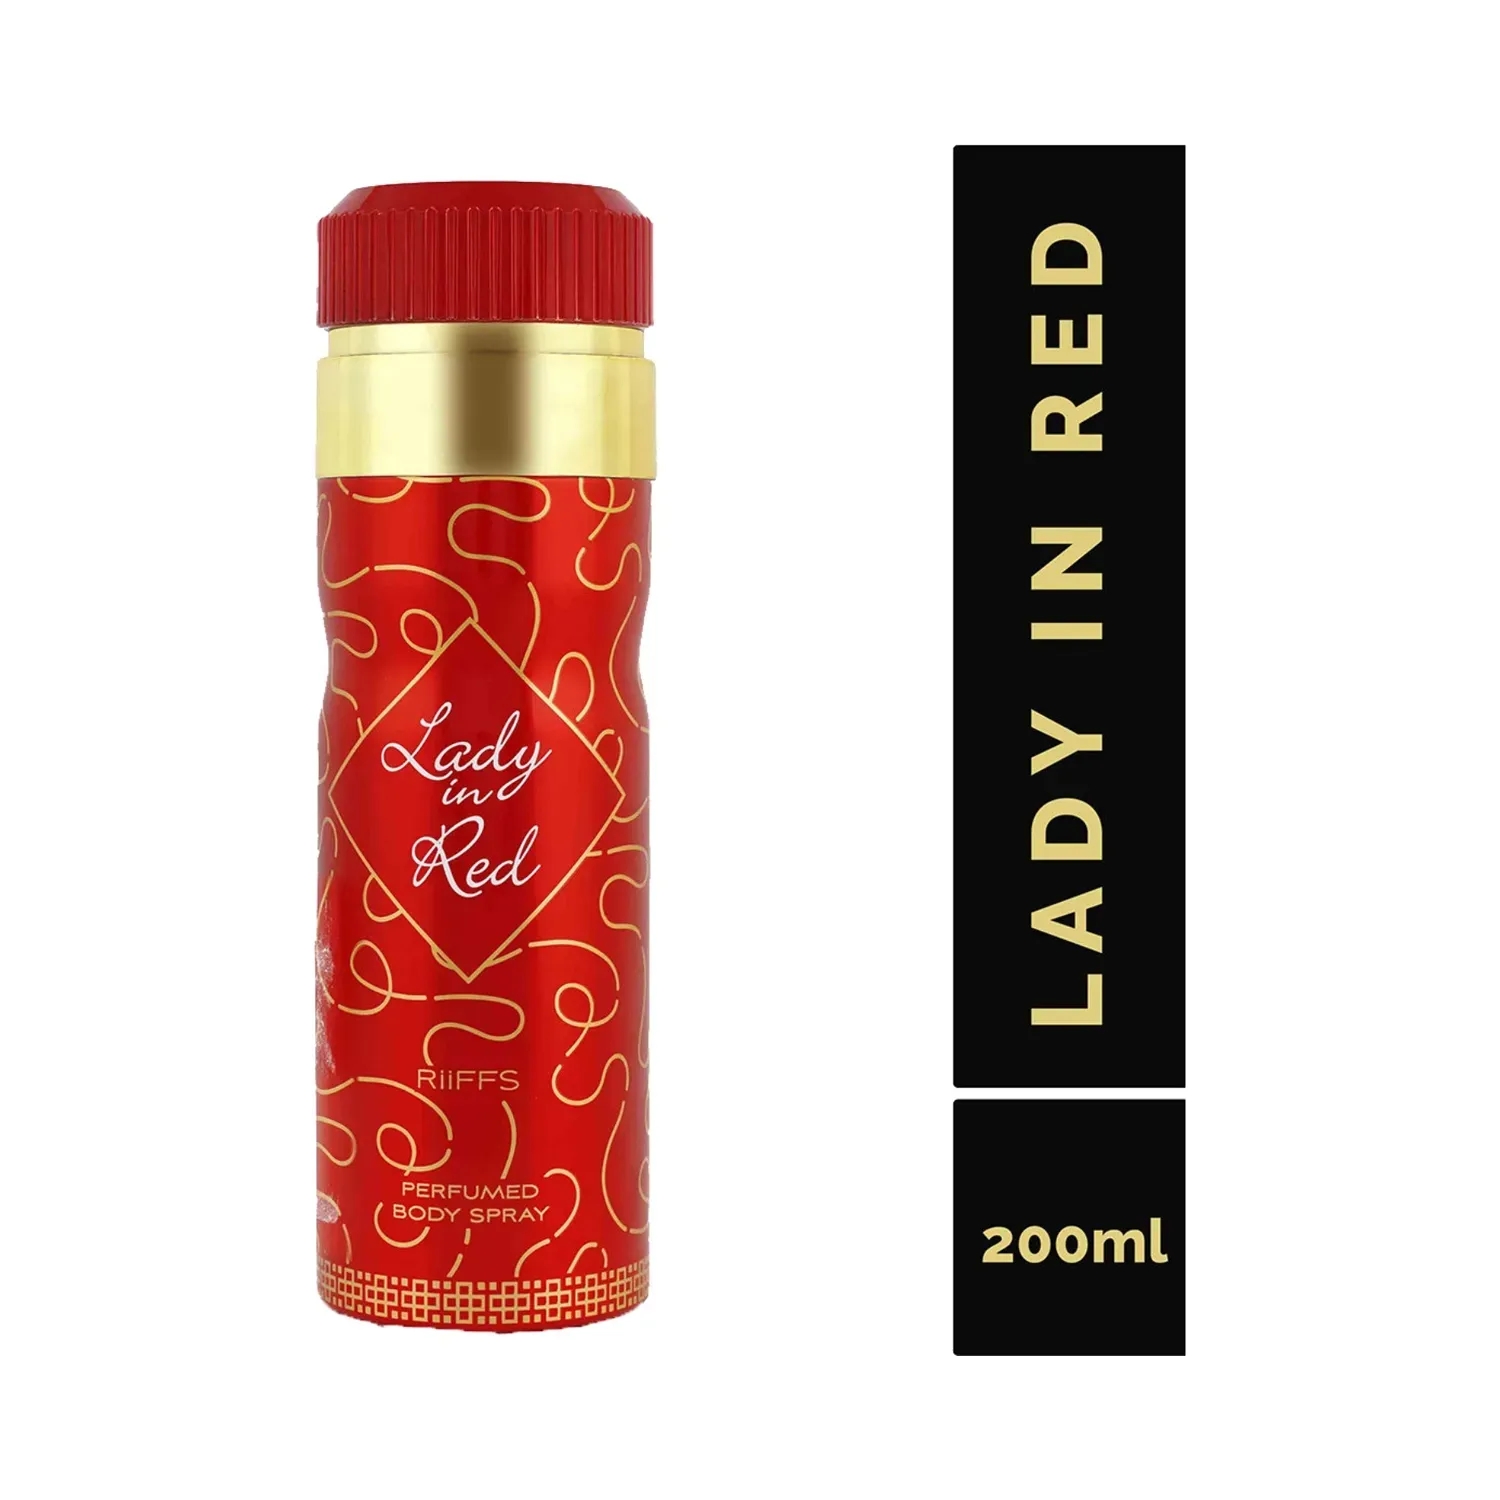 RiiFFS | RiiFFS Lady In Red Deodorant Perfume Body Spray (200ml)